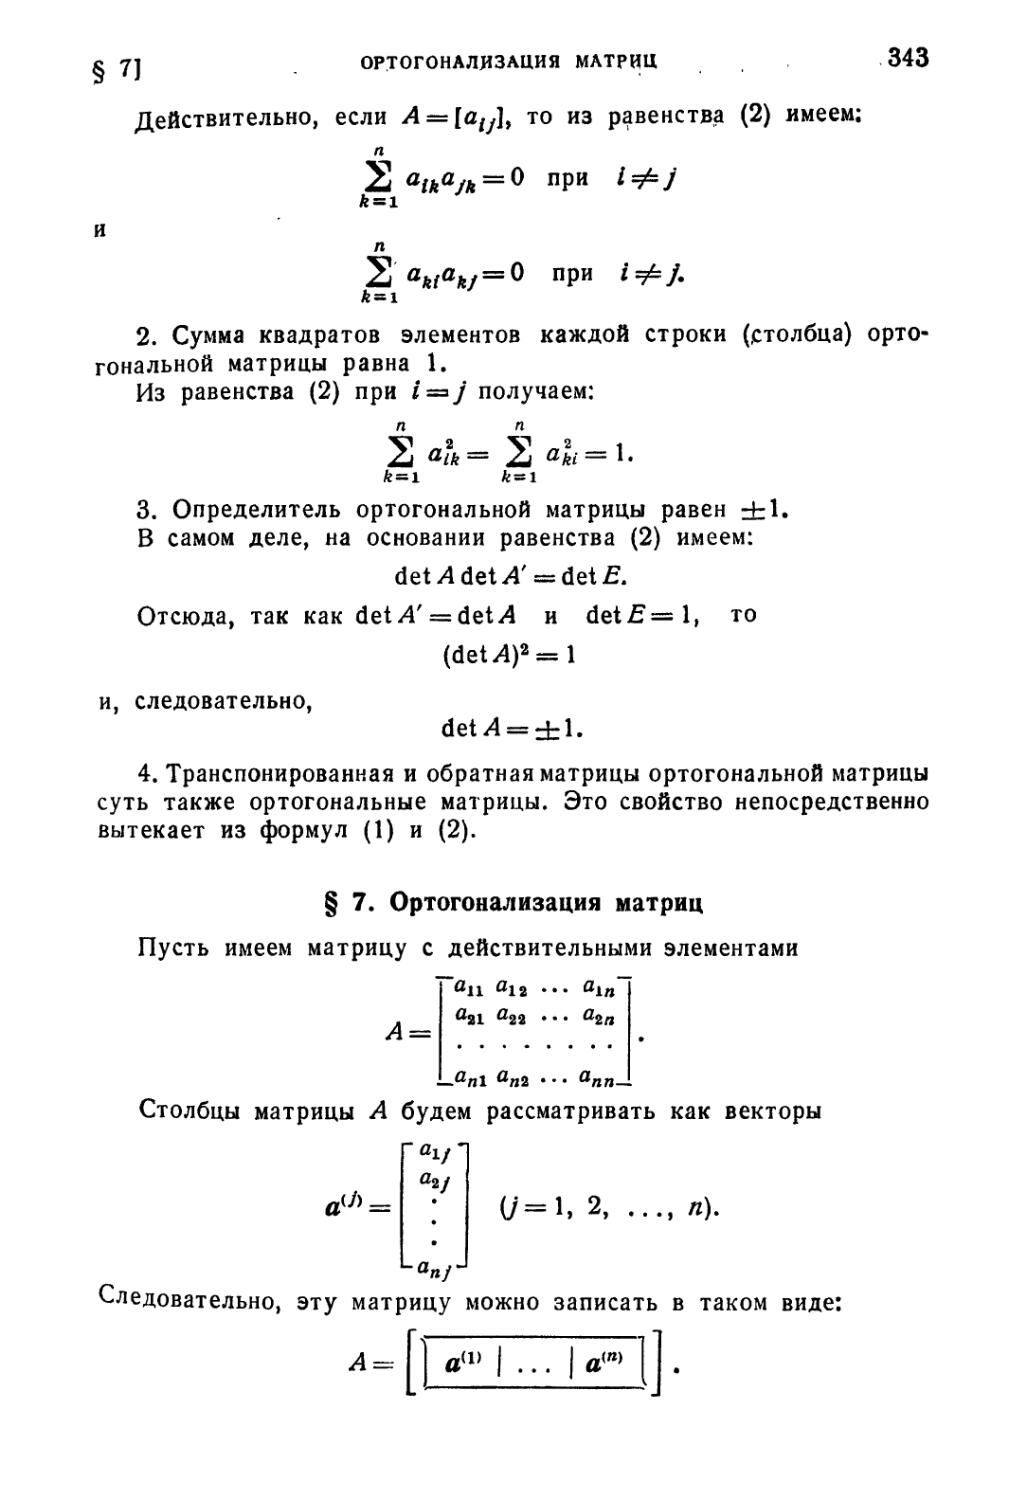 § 7. Ортогонализация матриц